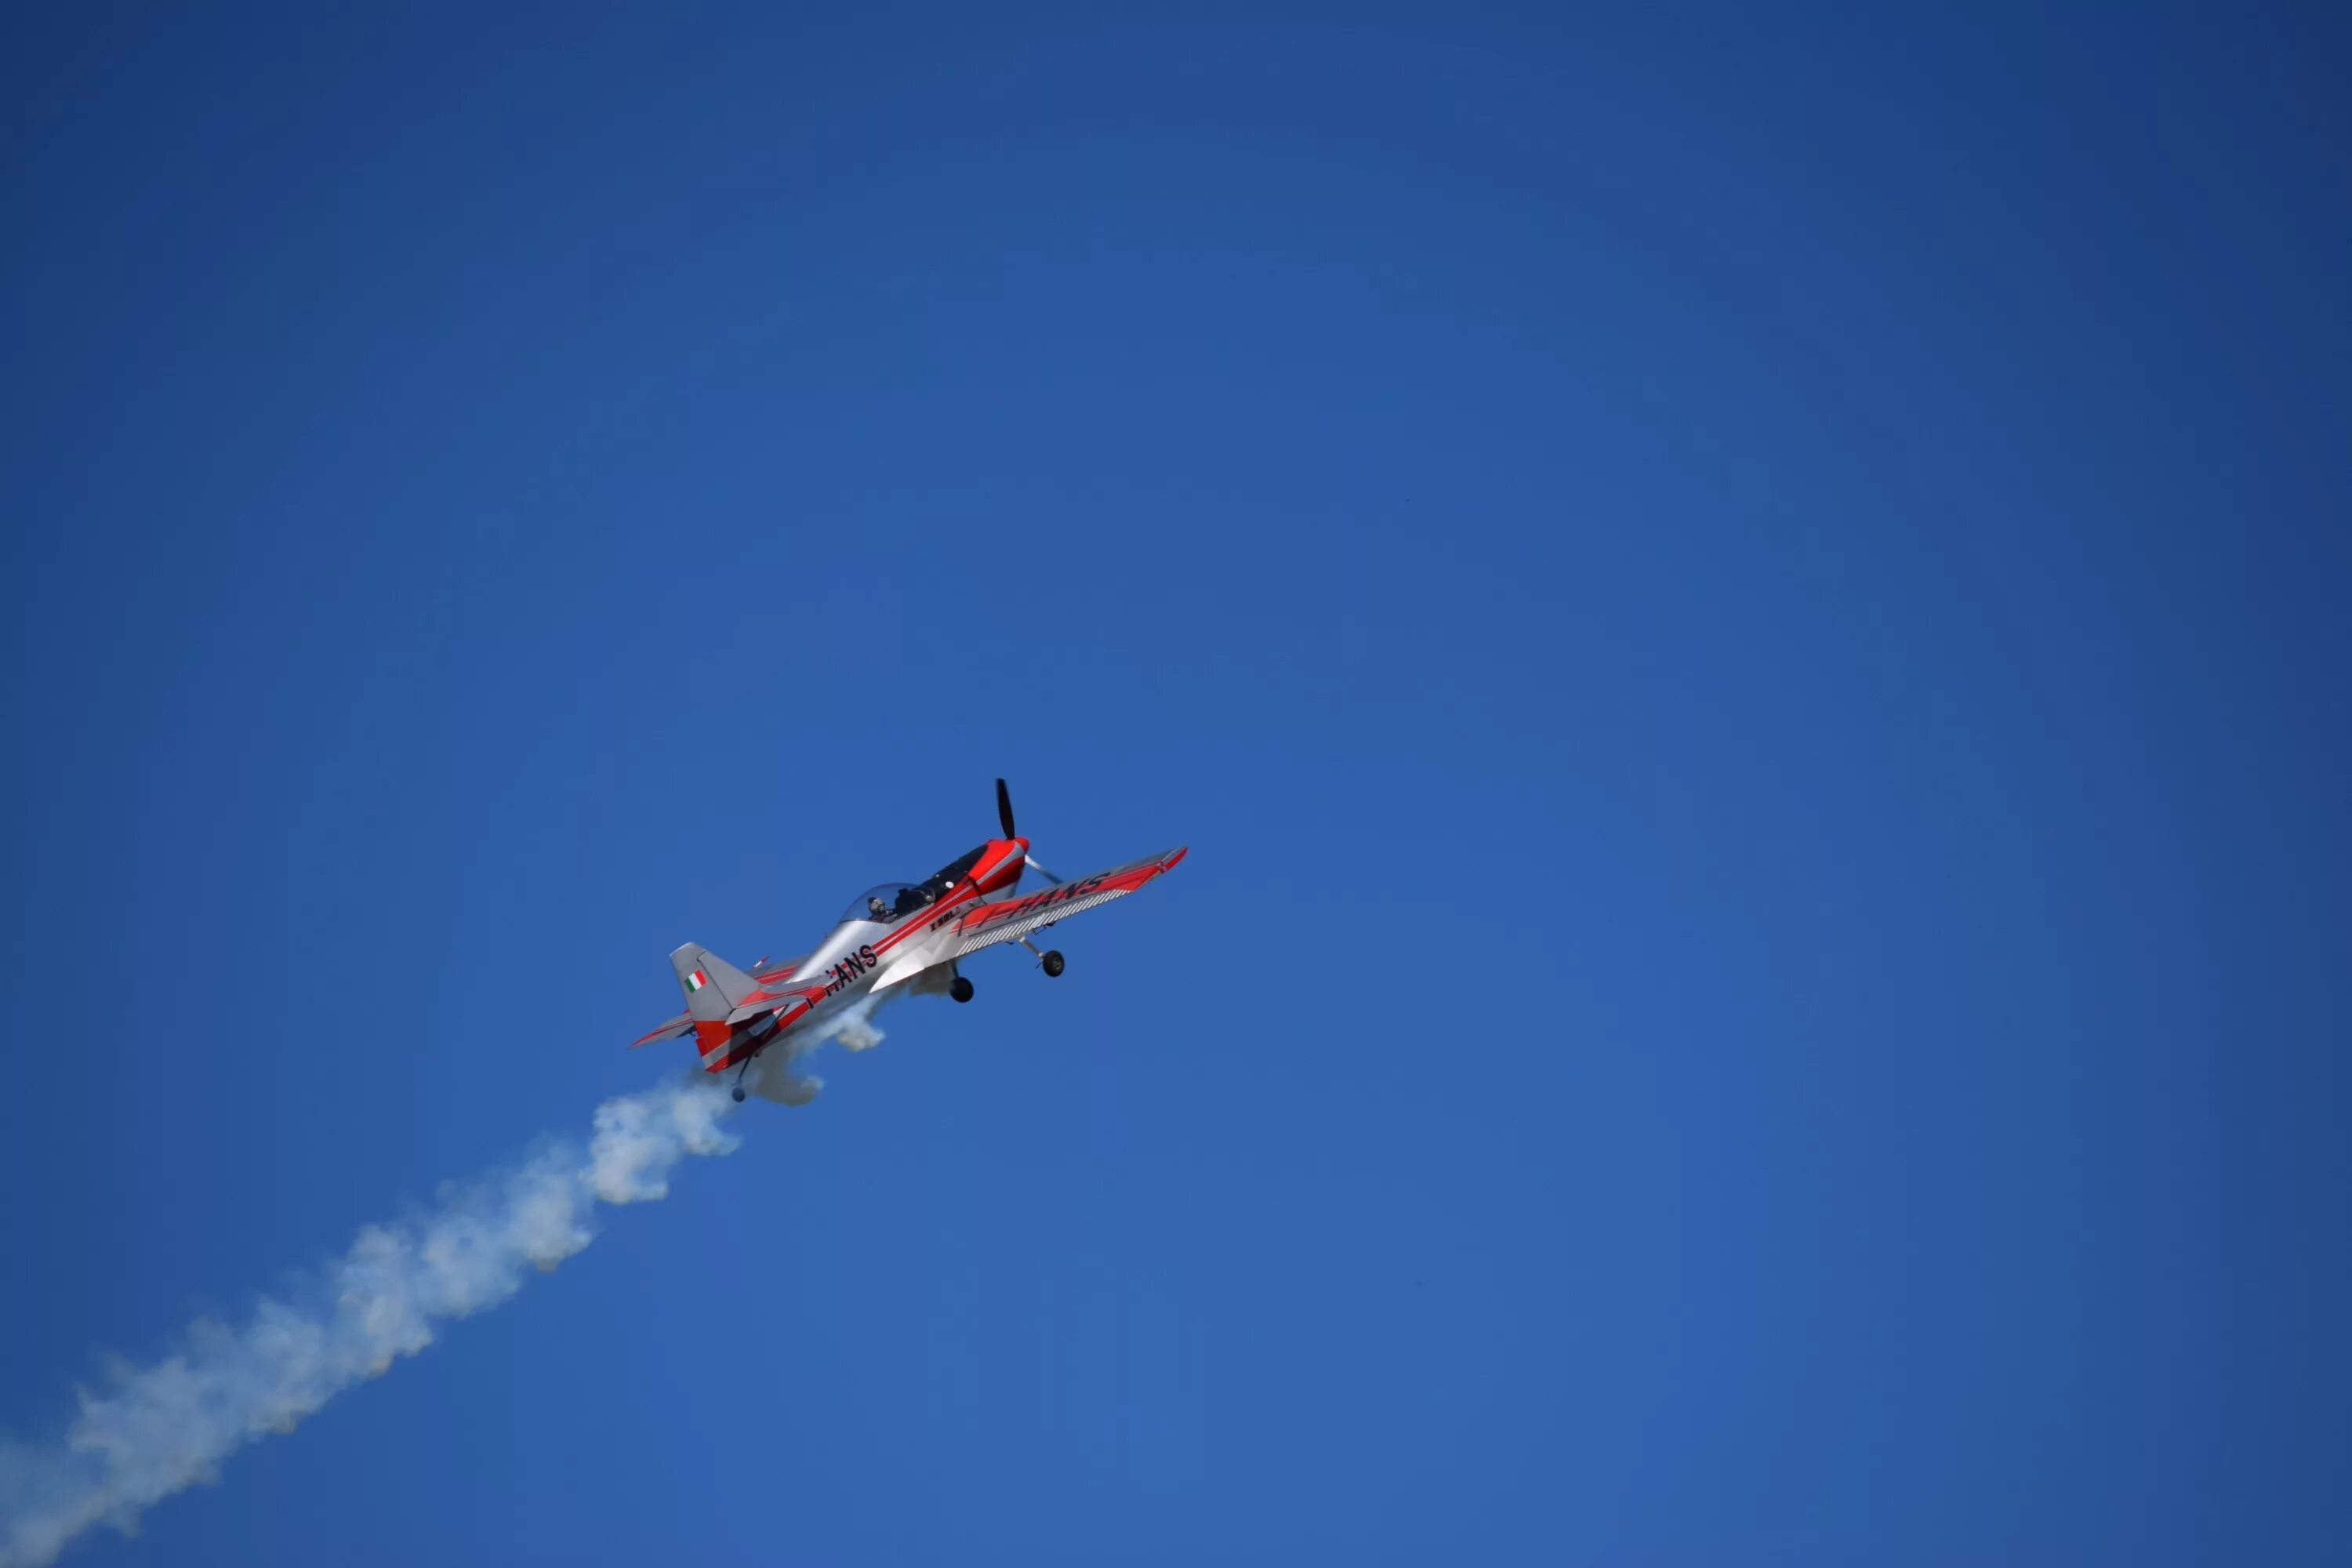 Пилотаж на самолете. Спортивные самолеты. Спортивный самолет в небе. Спортивные самолеты для высшего пилотажа. Акробатика самолет.